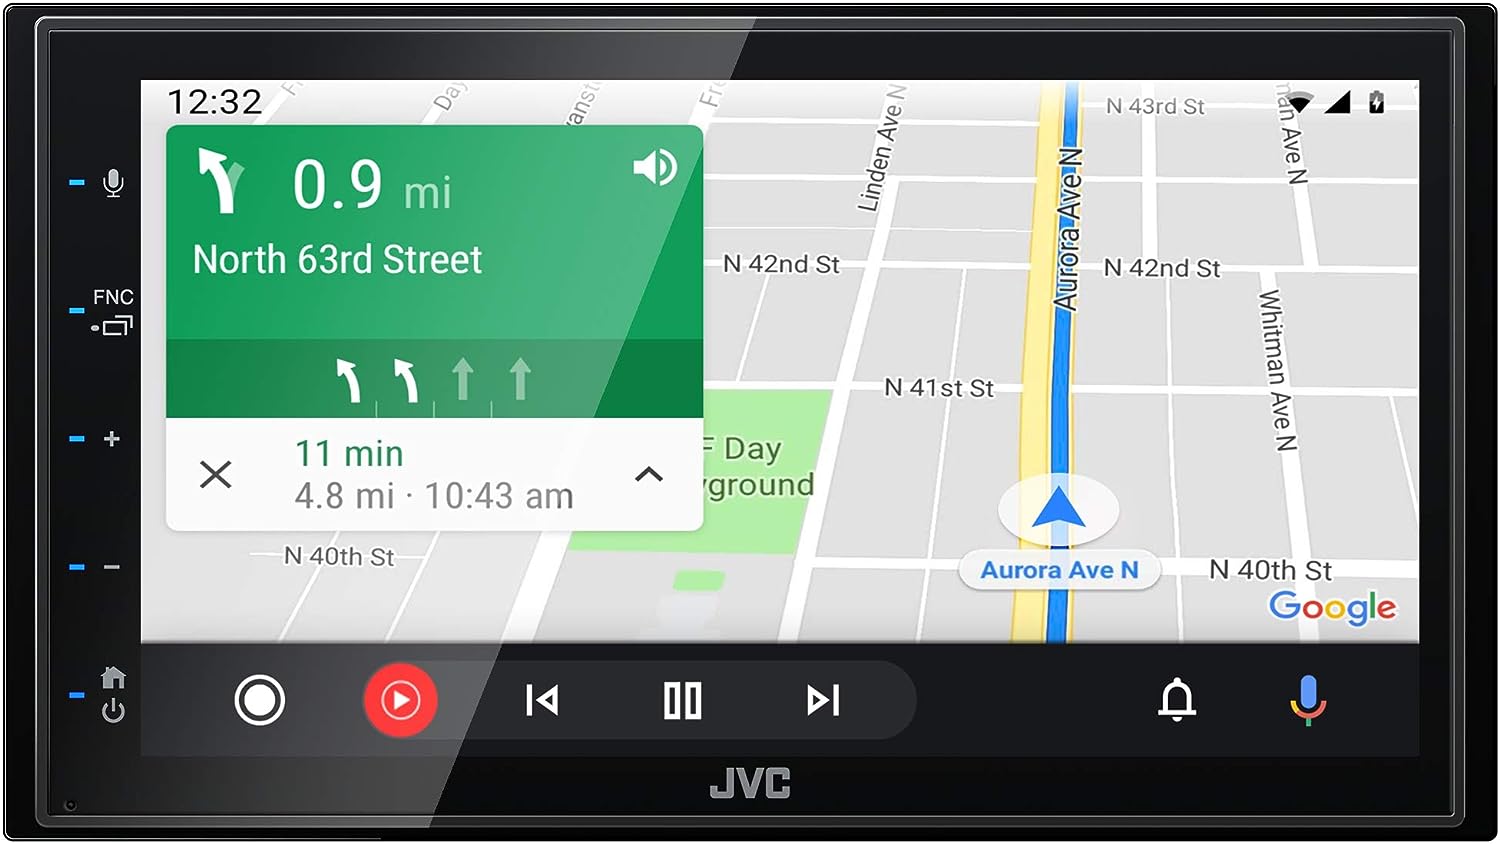 Radio JVC Apple CarPlay Android Auto KW-M56BT